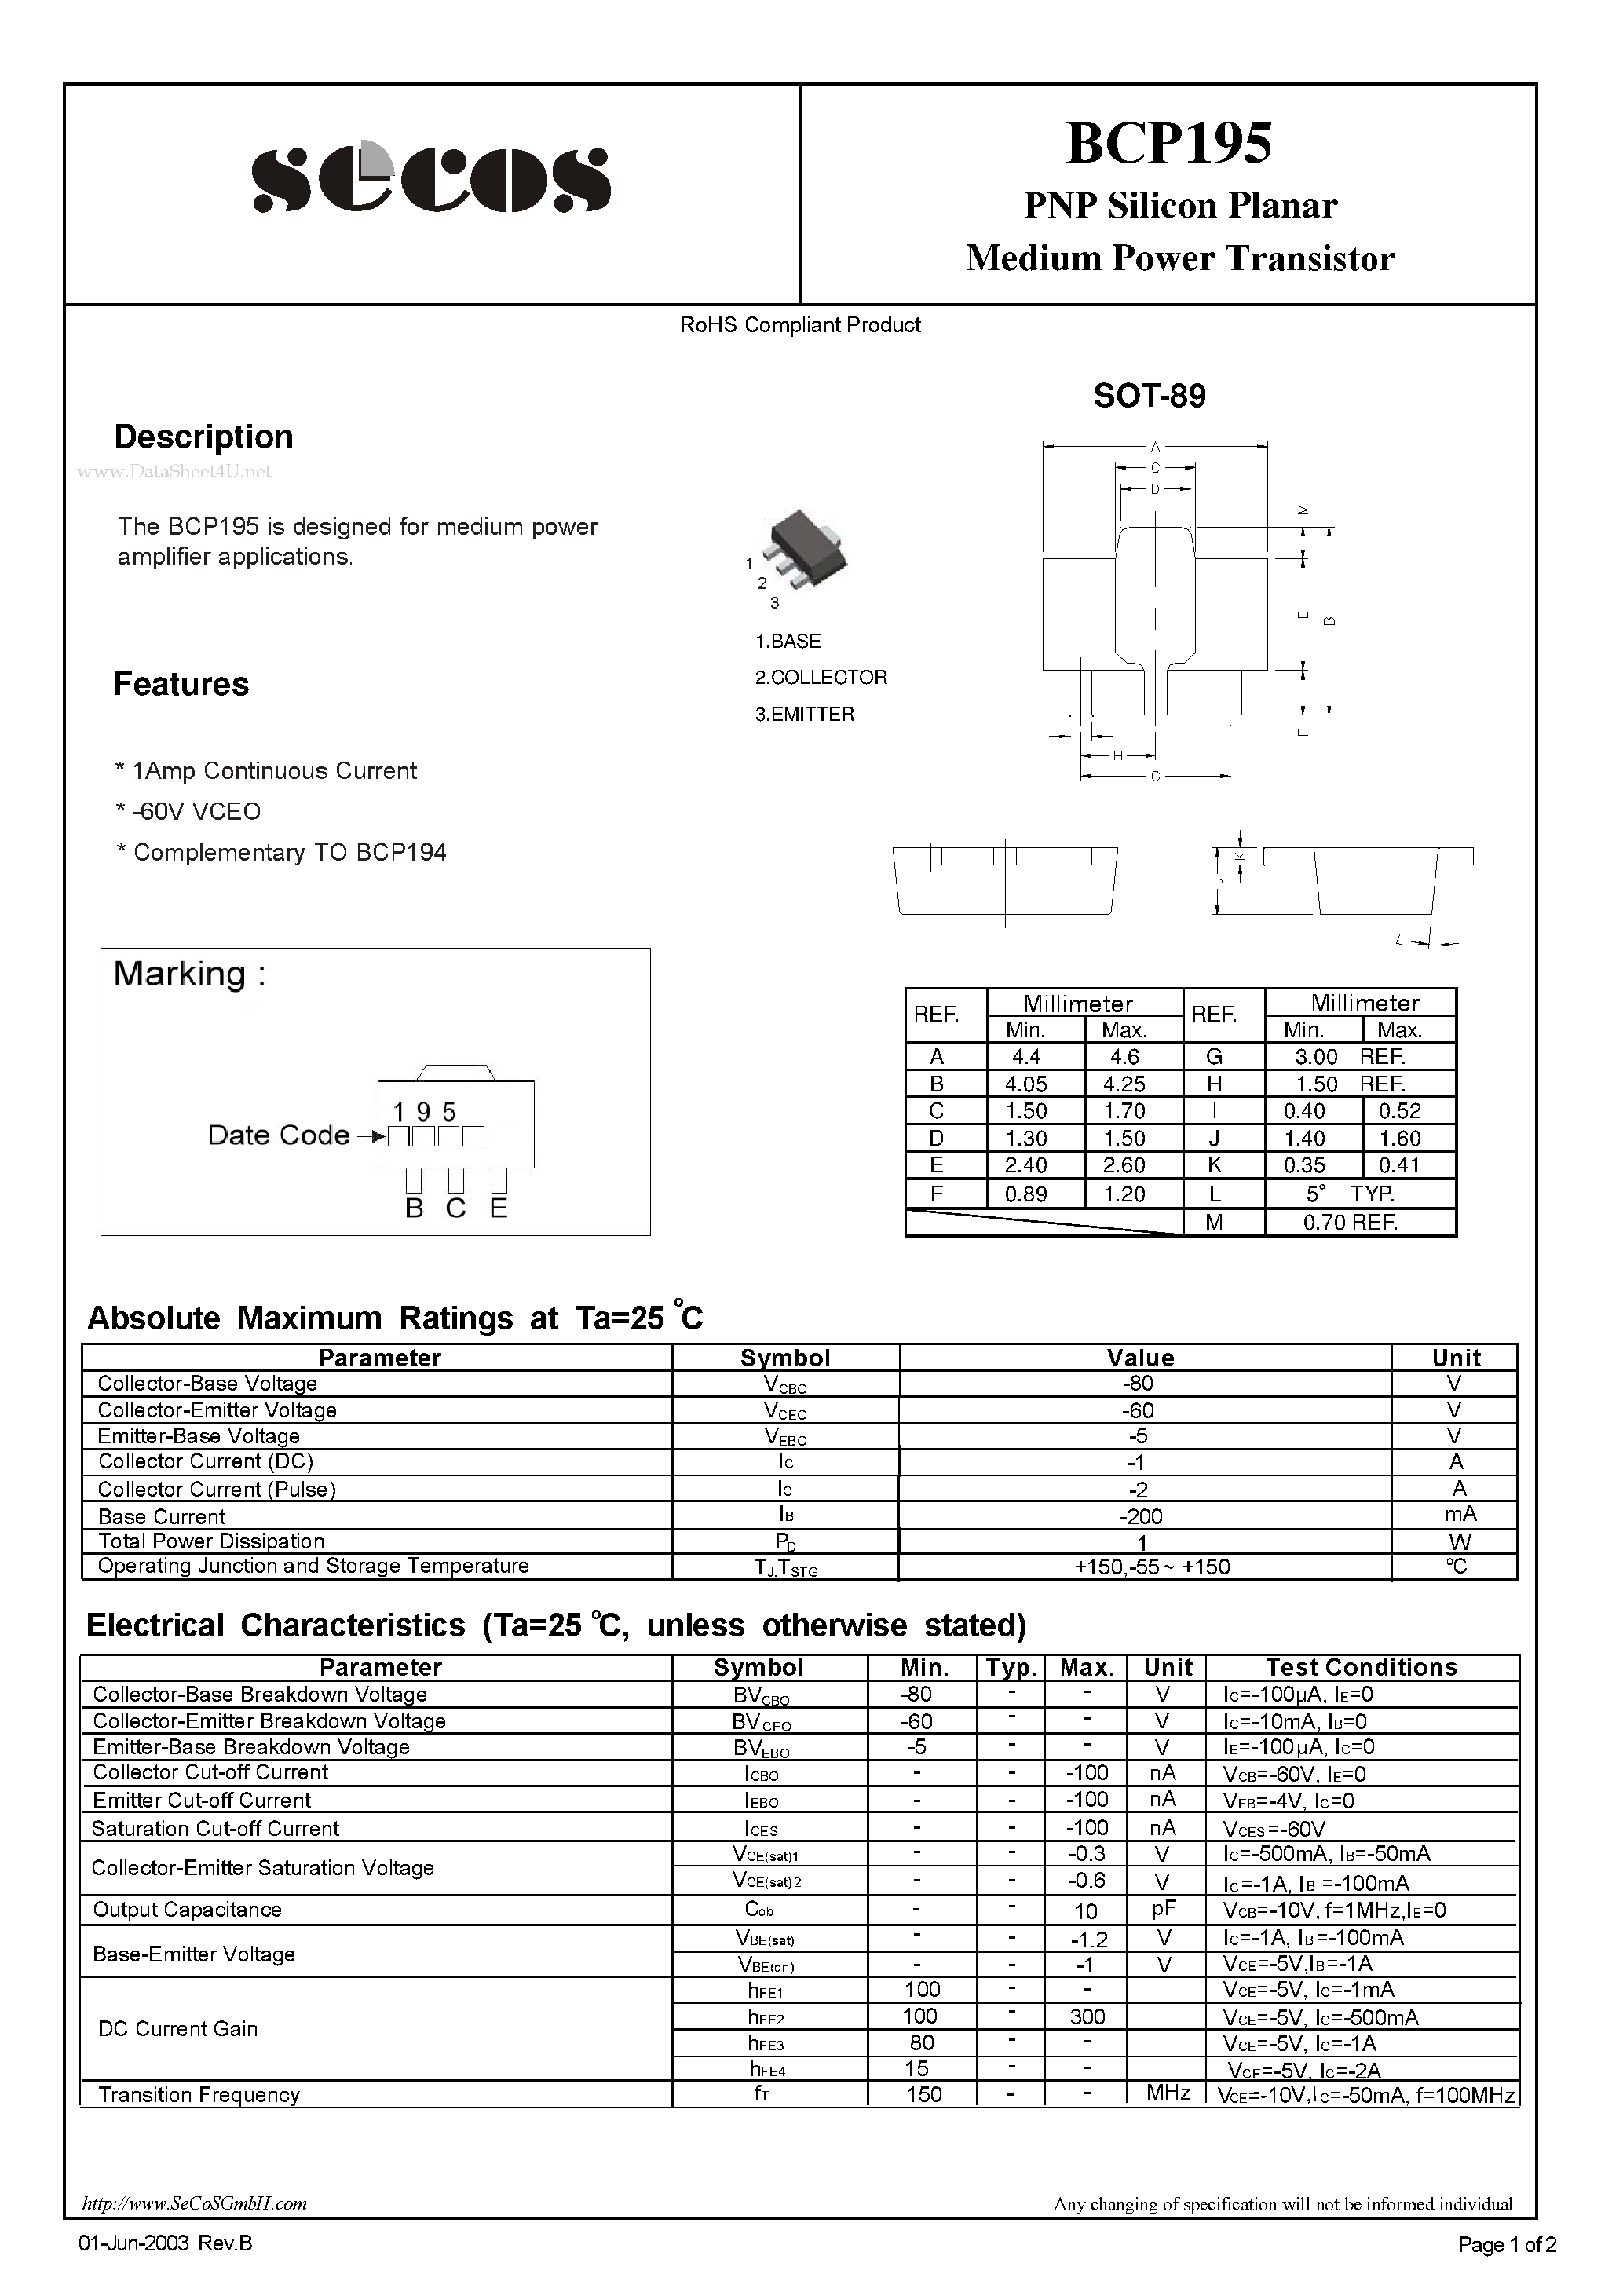 Даташит BCP195 - Medium Power Transistor страница 1